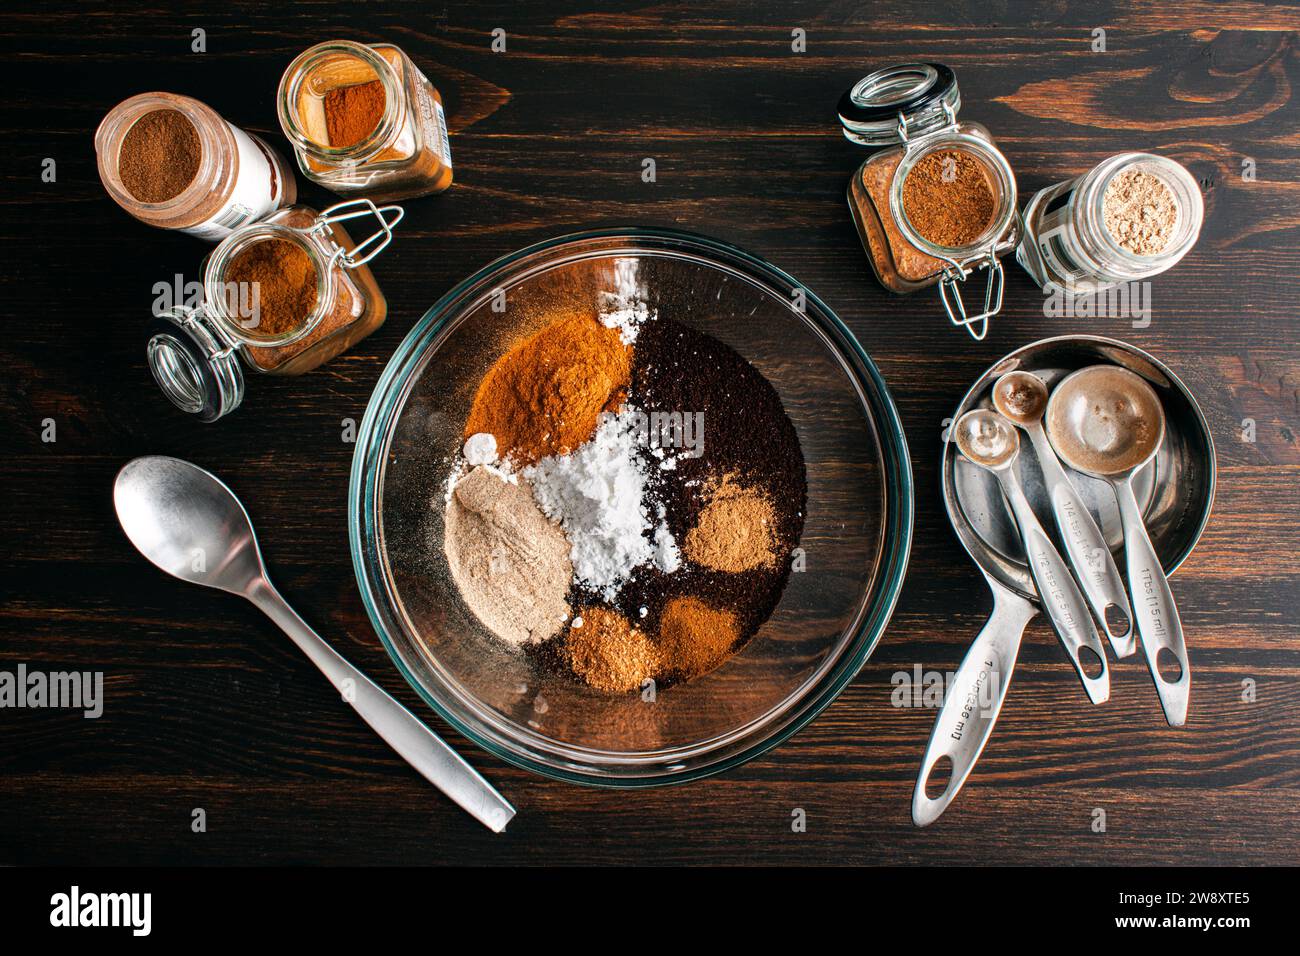 Preparazione della miscela di caffè natalizio piccante fatta in casa: Caffè macinato con zucchero in polvere, cannella, cardamomo e altre spezie macinate in un recipiente di miscelazione in vetro Foto Stock